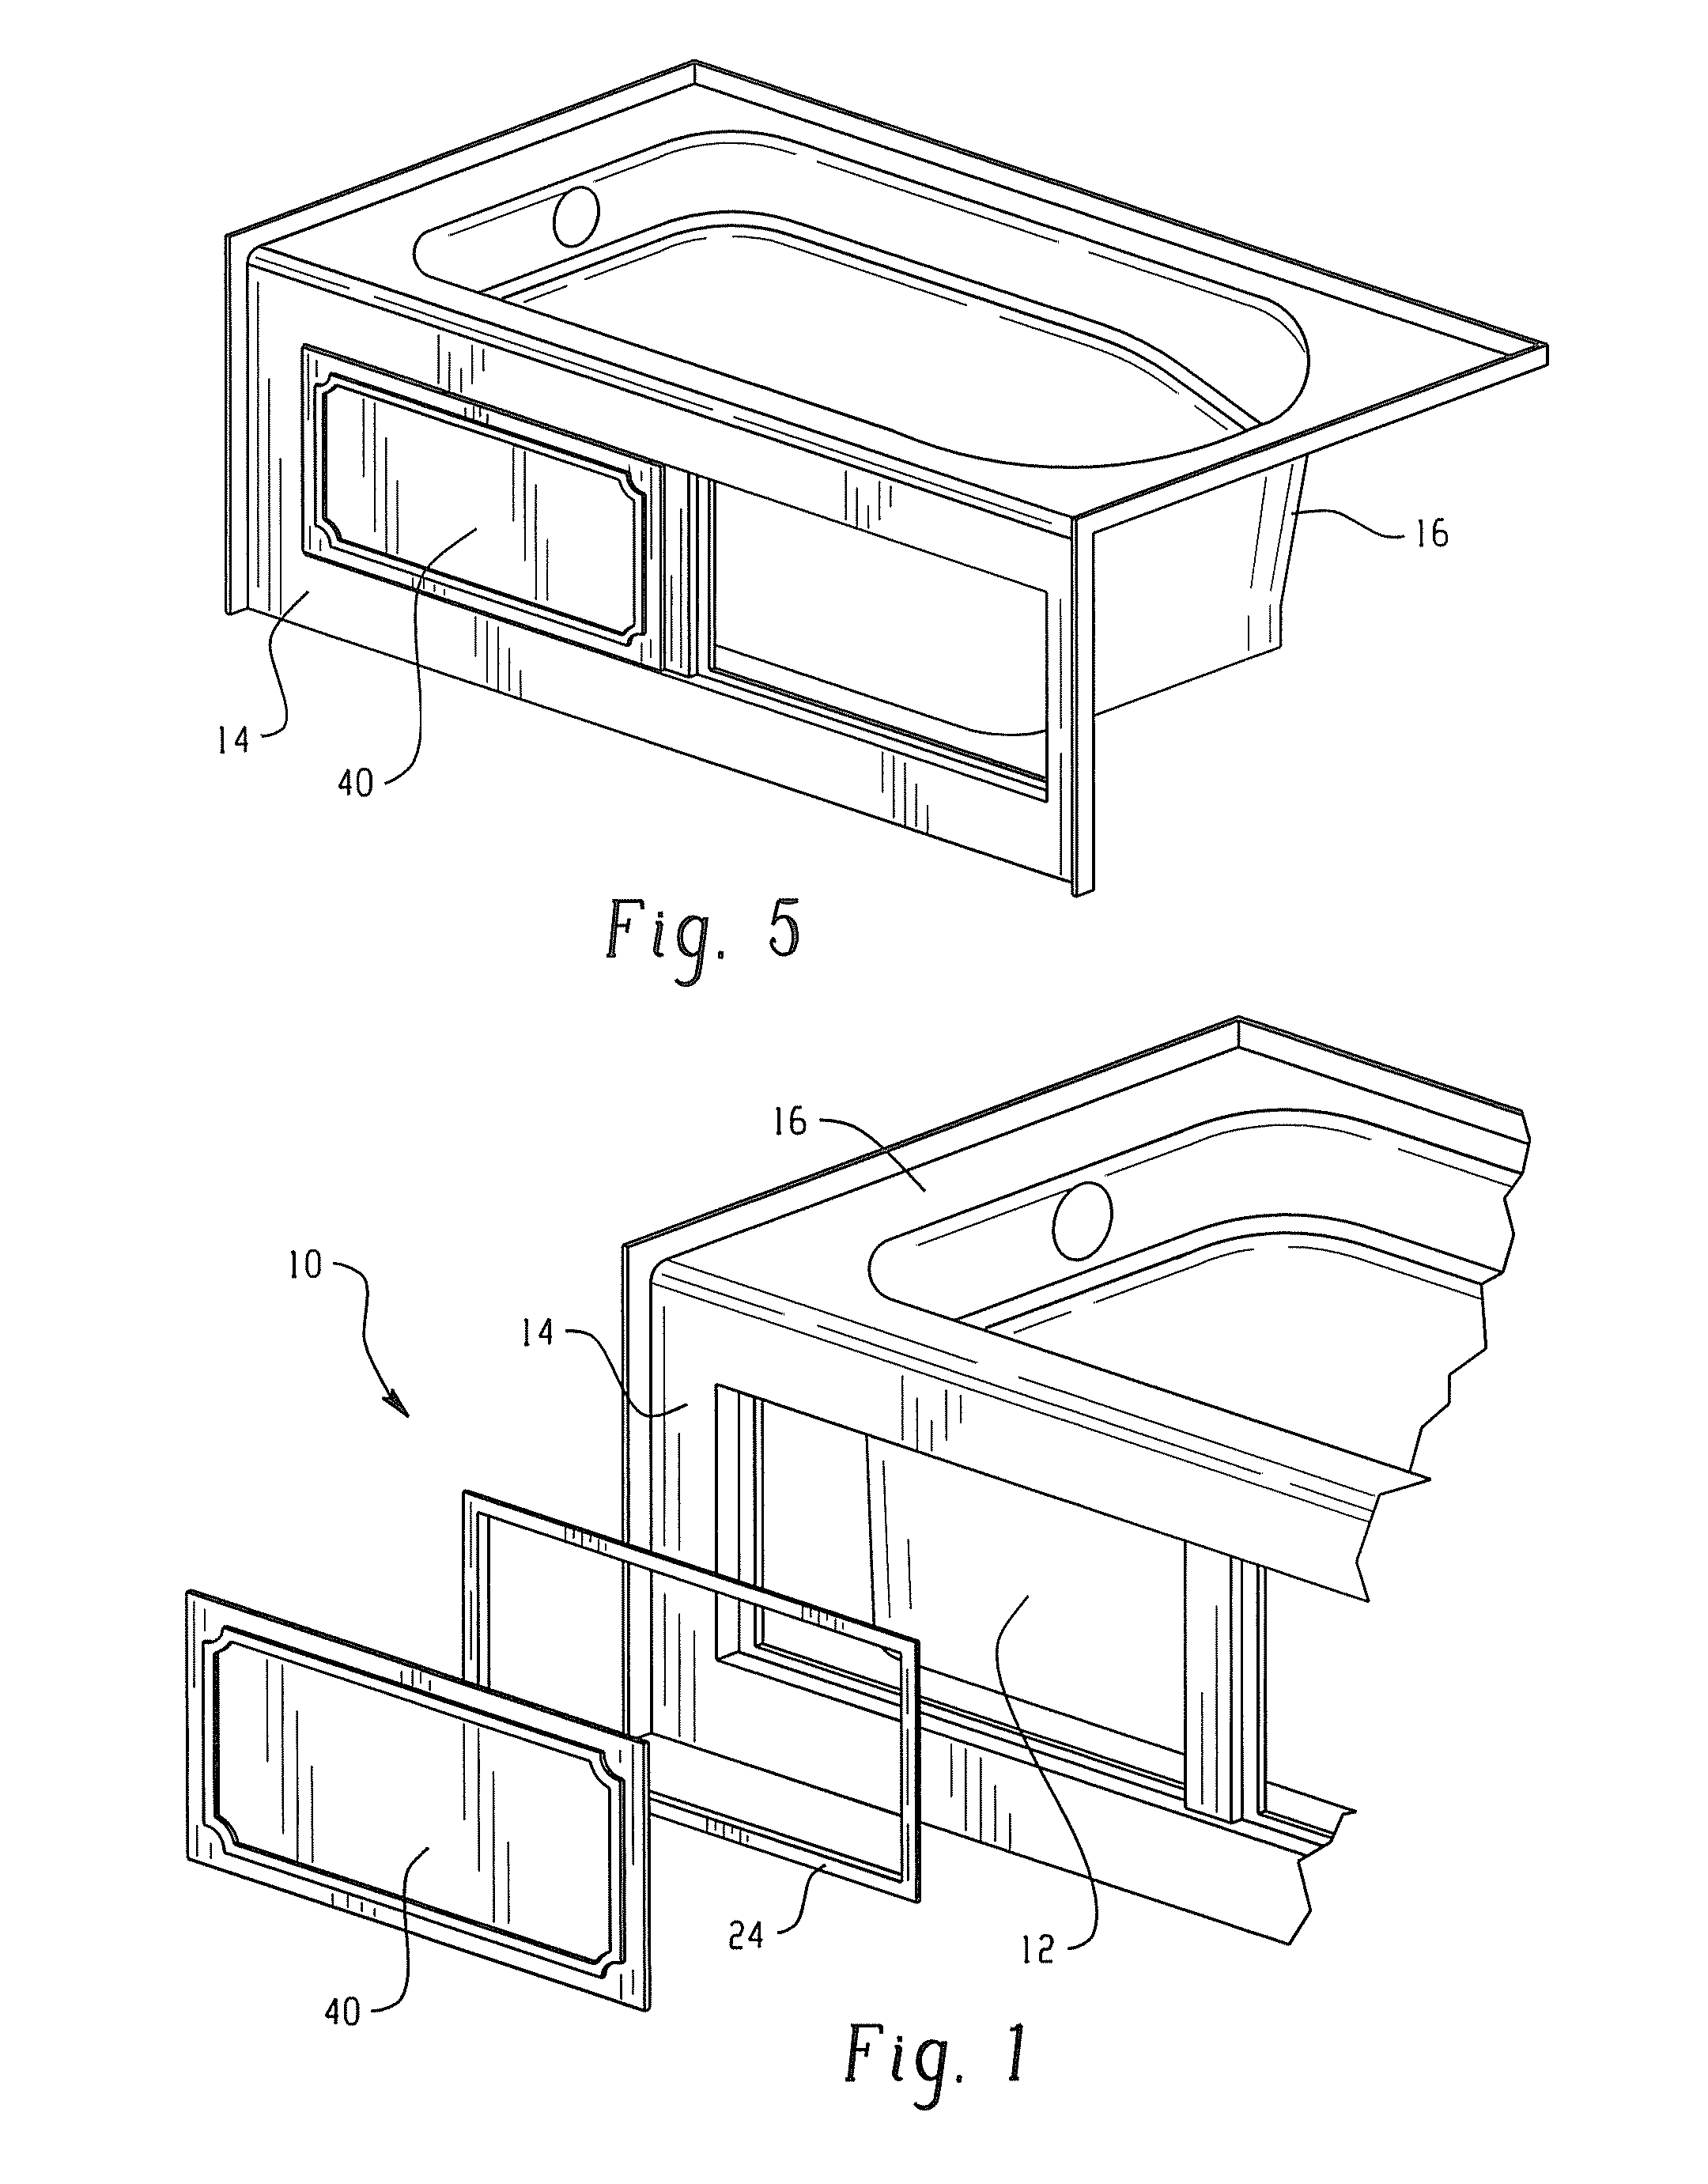 Tub skirt panel system